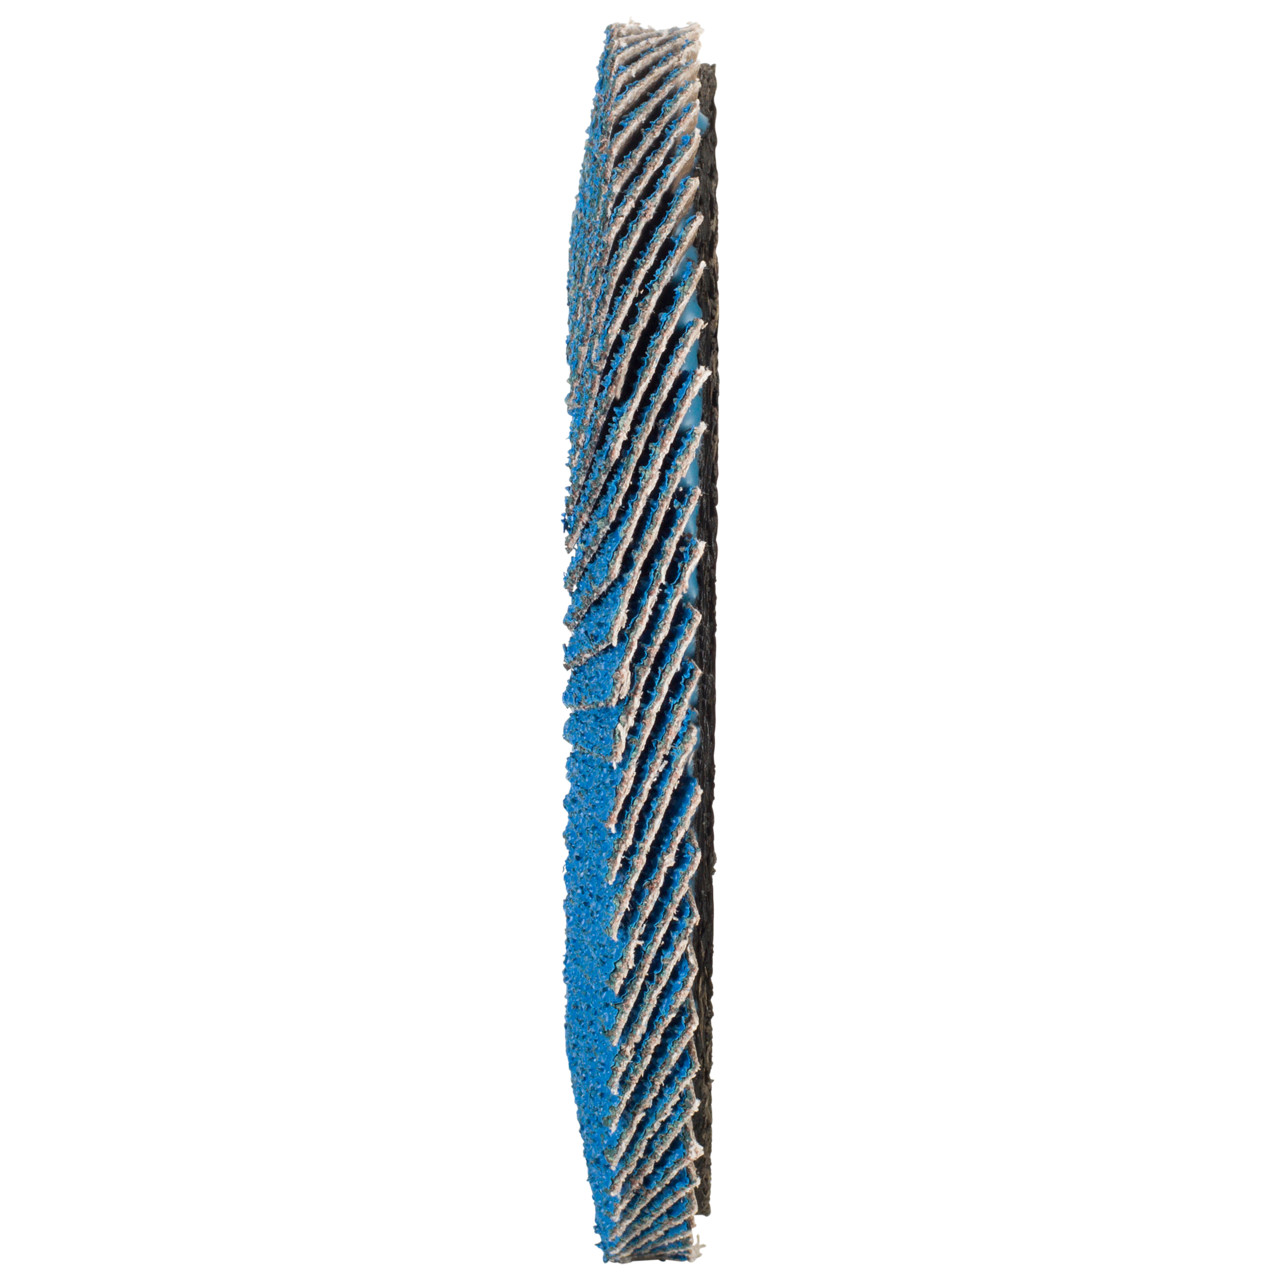 Tyrolit Gekartelde borgring DxH 115x22,2 FASTCUT voor staal en roestvrij staal, P60, vorm: 27A - offset uitvoering (glasvezeldrager uitvoering), Art. 160230